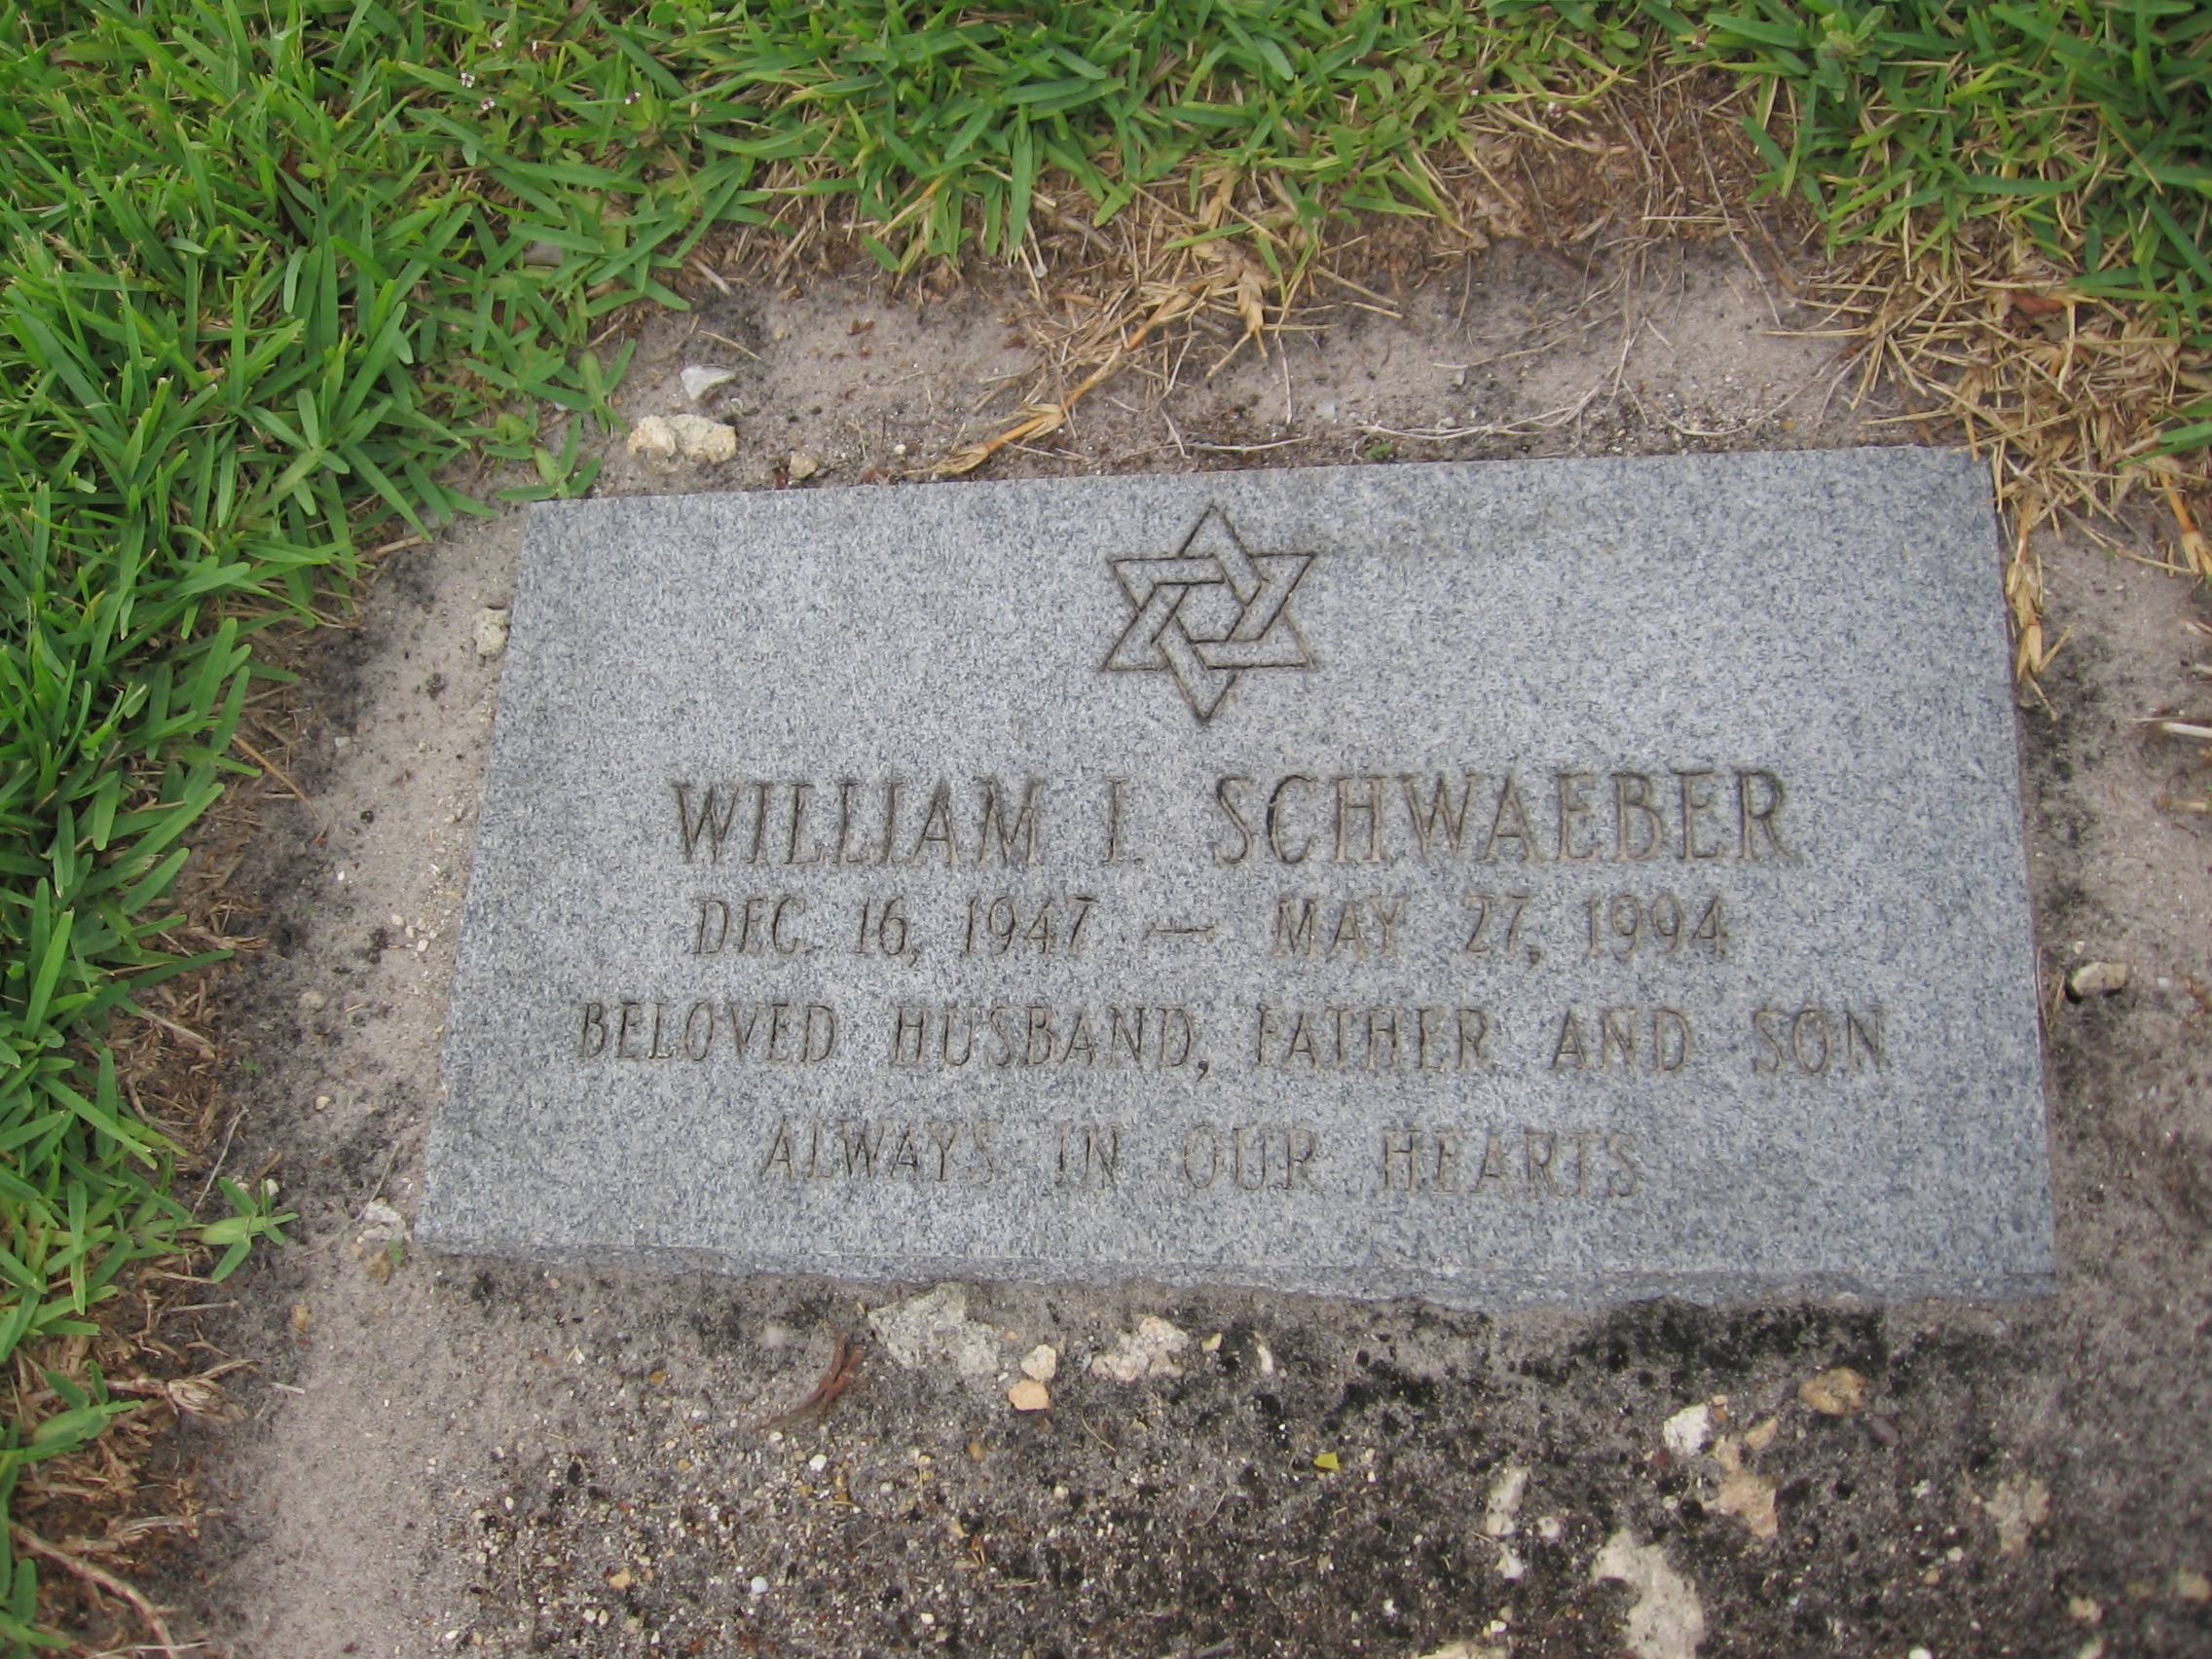 William L Schwaeber